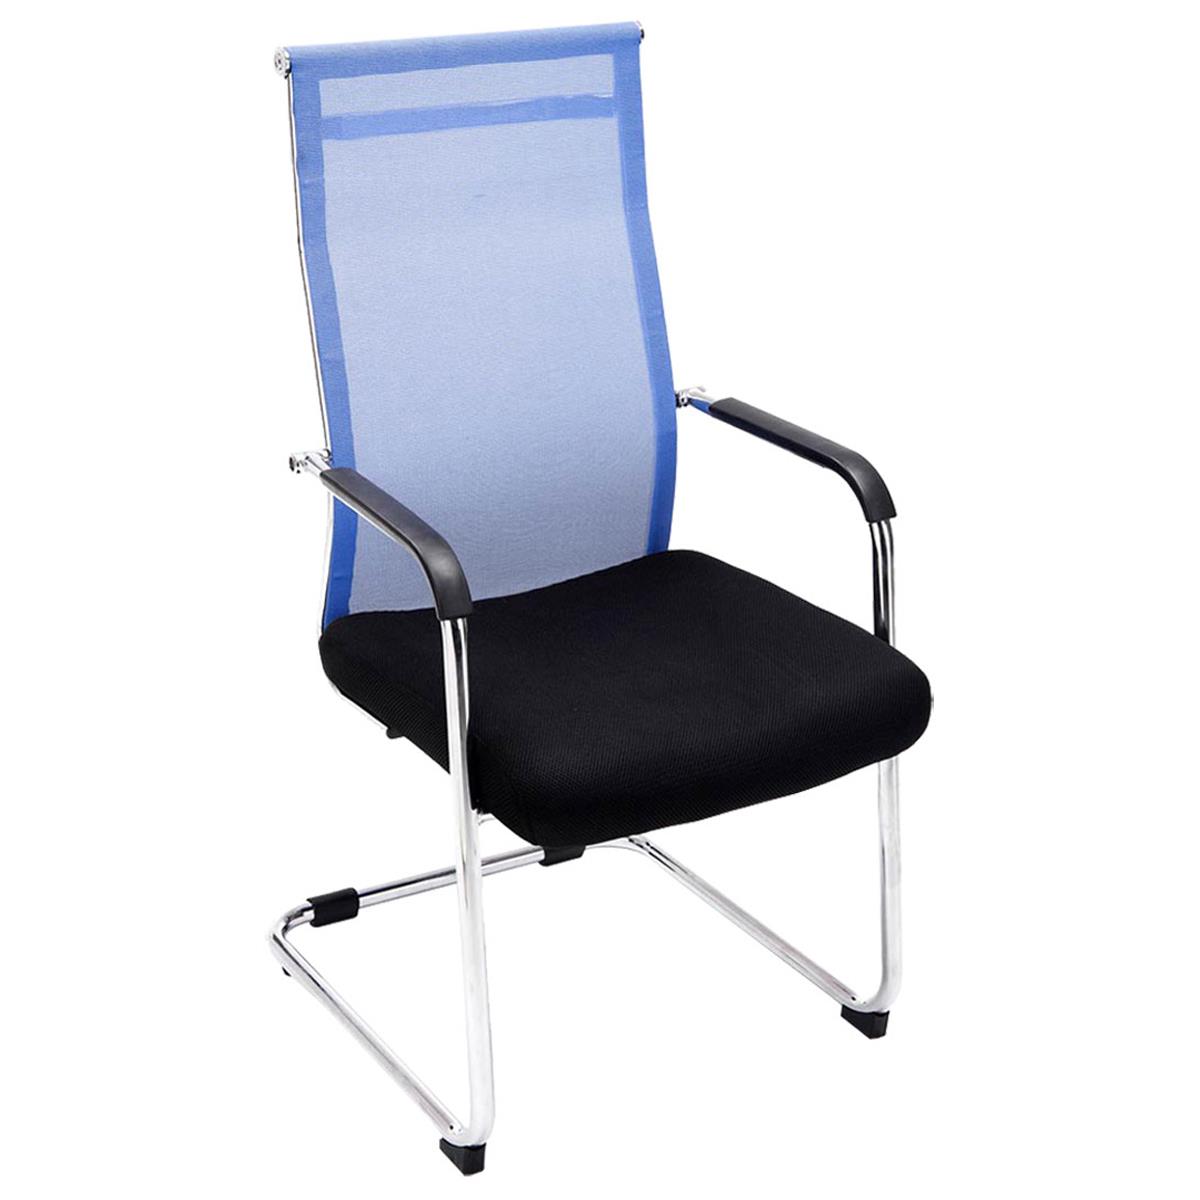 Chaise visiteur BREMEN, Structure Métallique, en Maille Respirable, Noir/ Bleu